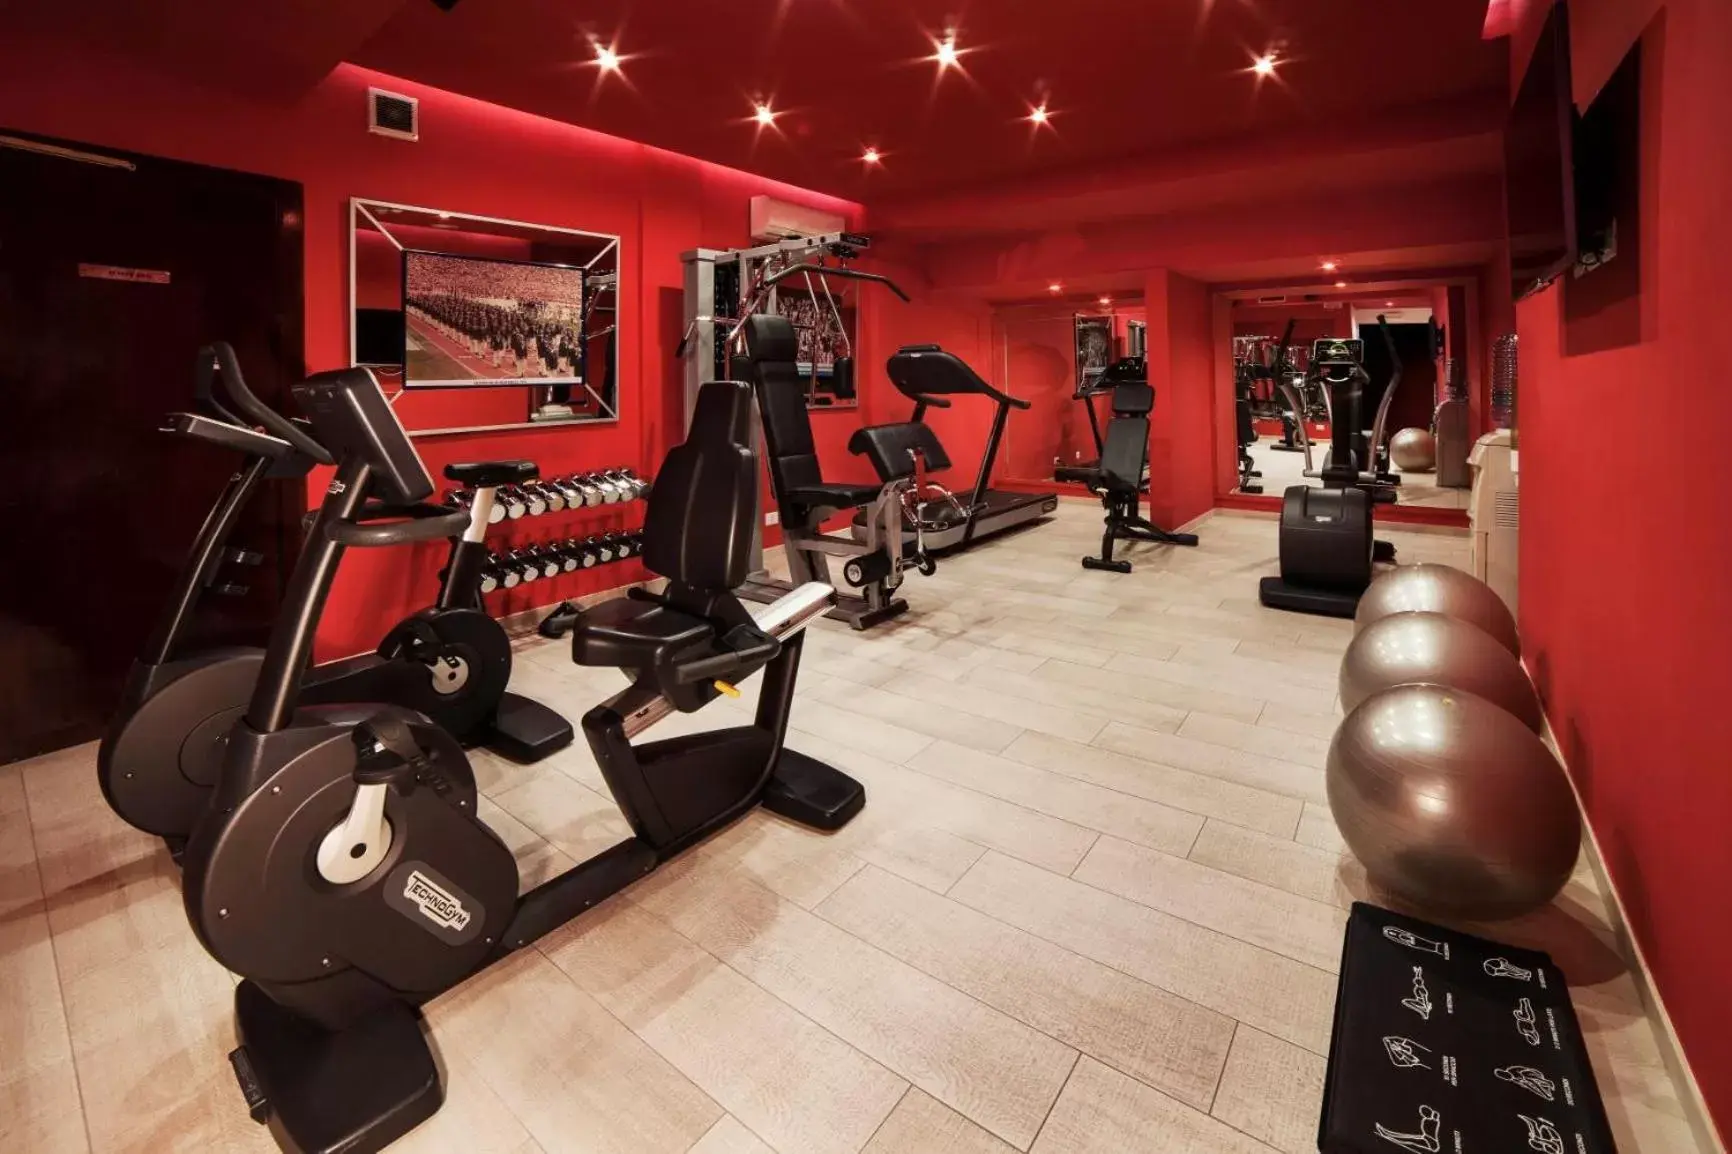 Fitness centre/facilities in Radisson Blu GHR Rome